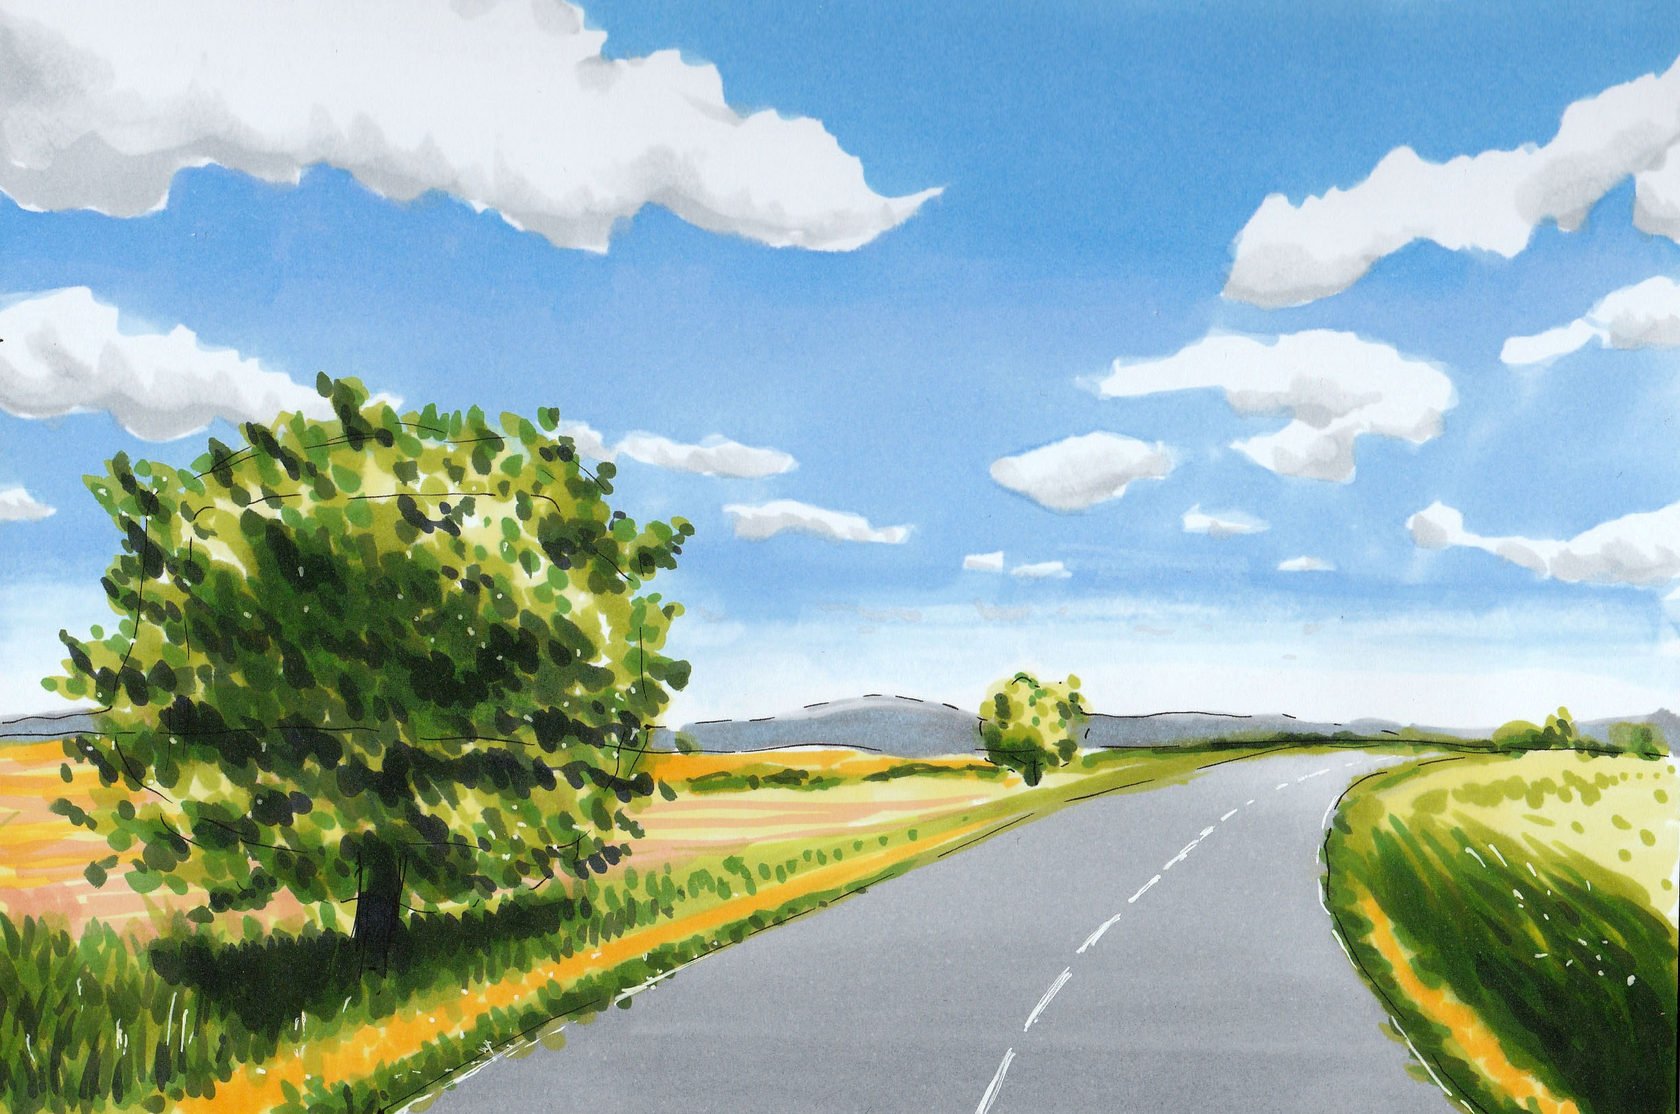 Третий класс дорог. "Линейная перспектива" - пейзаж "Тоскана". Пейзаж с дорогой. Природа рисунок. Легкие пейзажи.